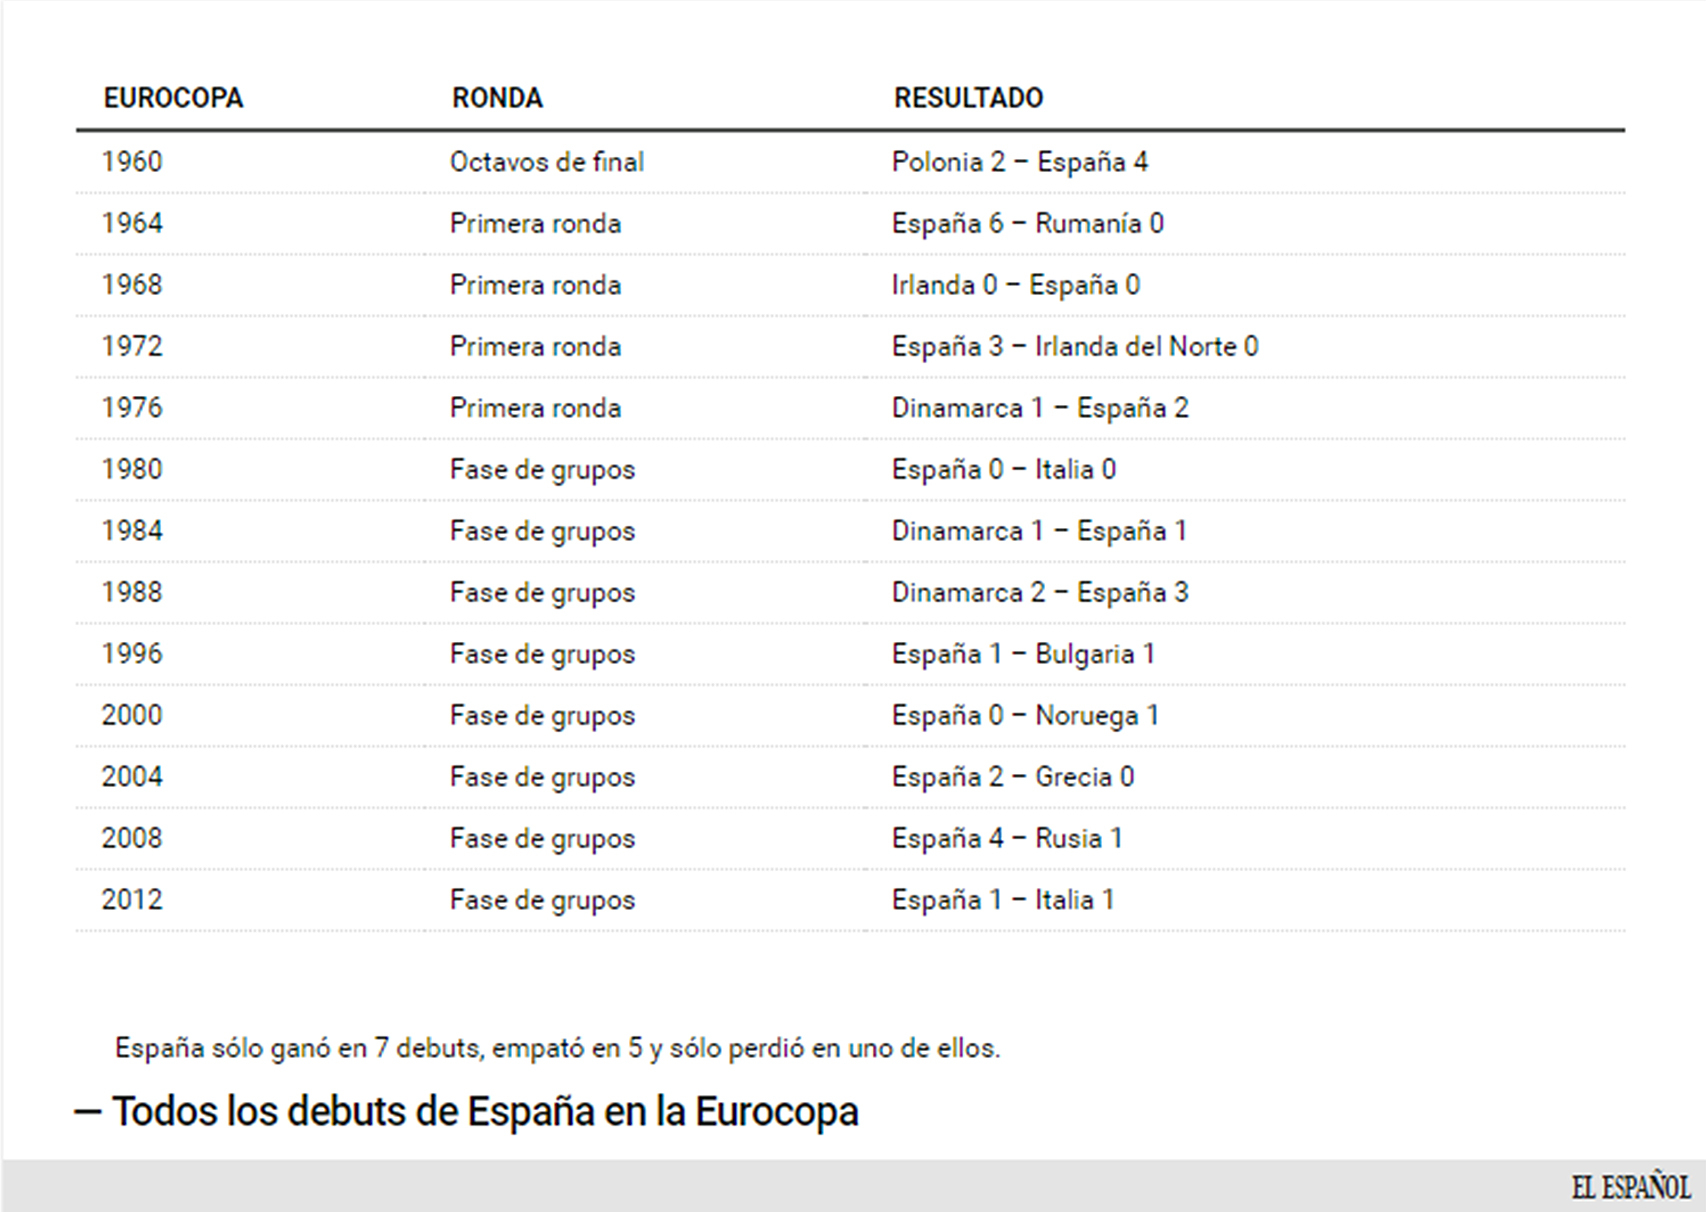 Debuts de España en todas las Eurocopas en que ha participado.